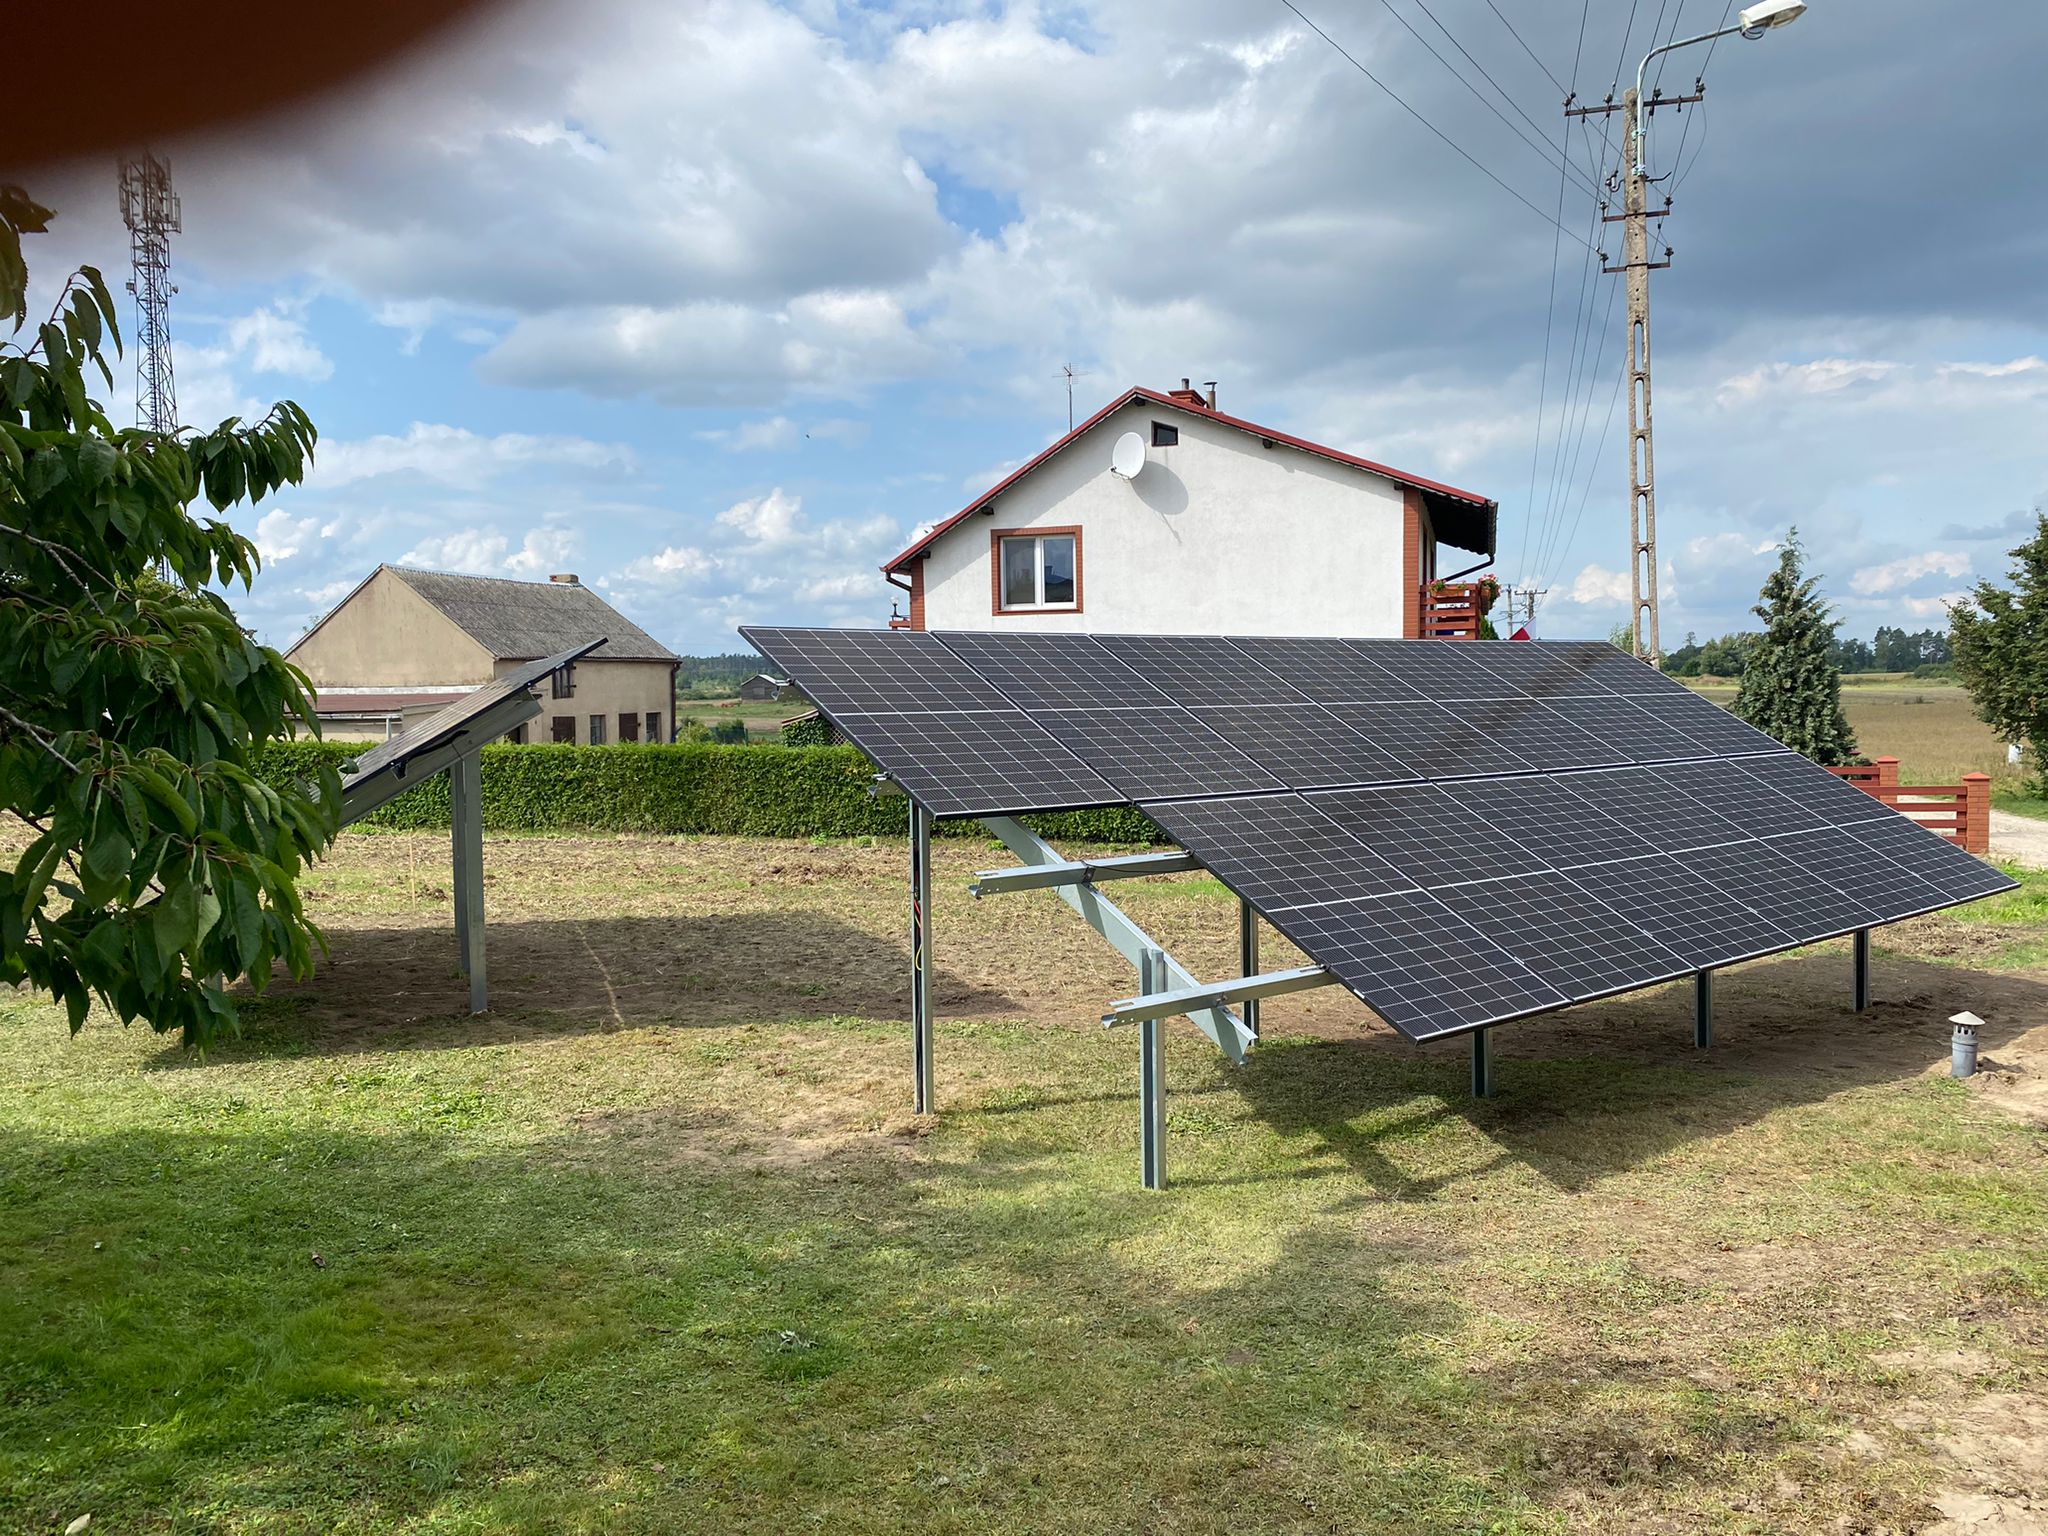 10 kw panele fotowoltaiczne w miejscowości Krojanty w Gminie Chojnice - instalacja bezpośrednio na gruncie